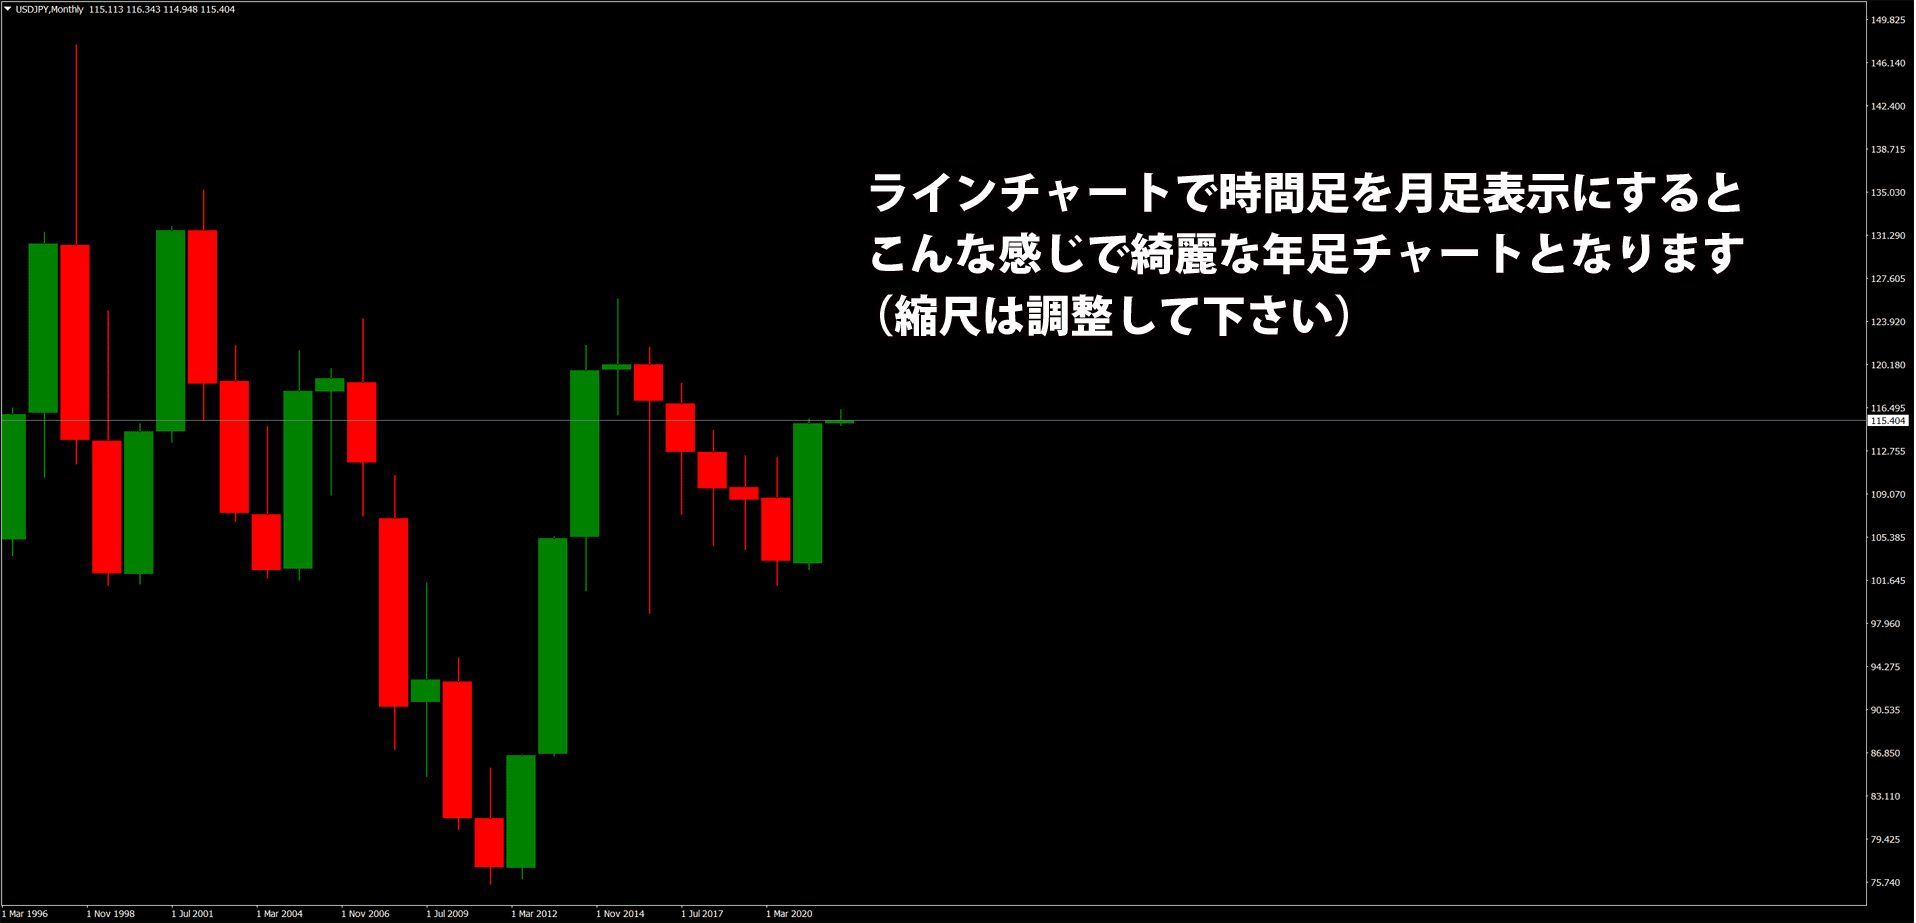 見栄えを調整したドル円の年足チャート